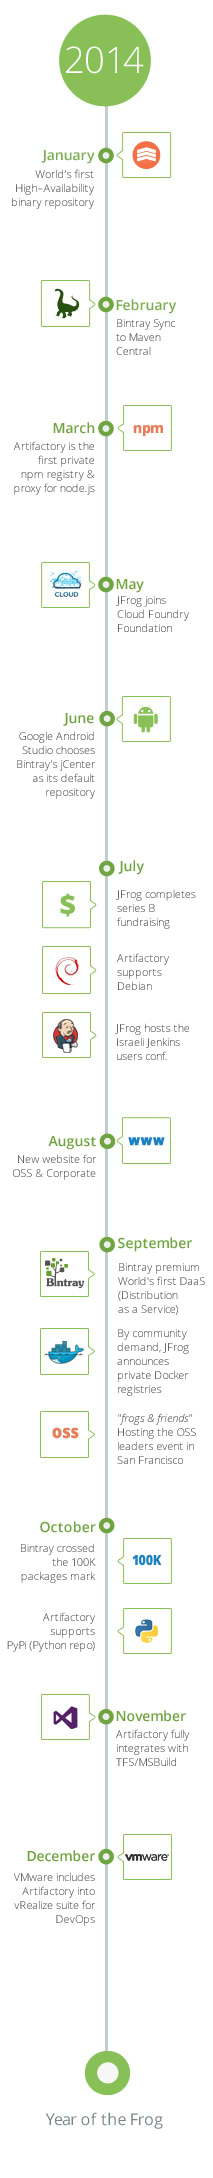 JFrog 2014 Timeline